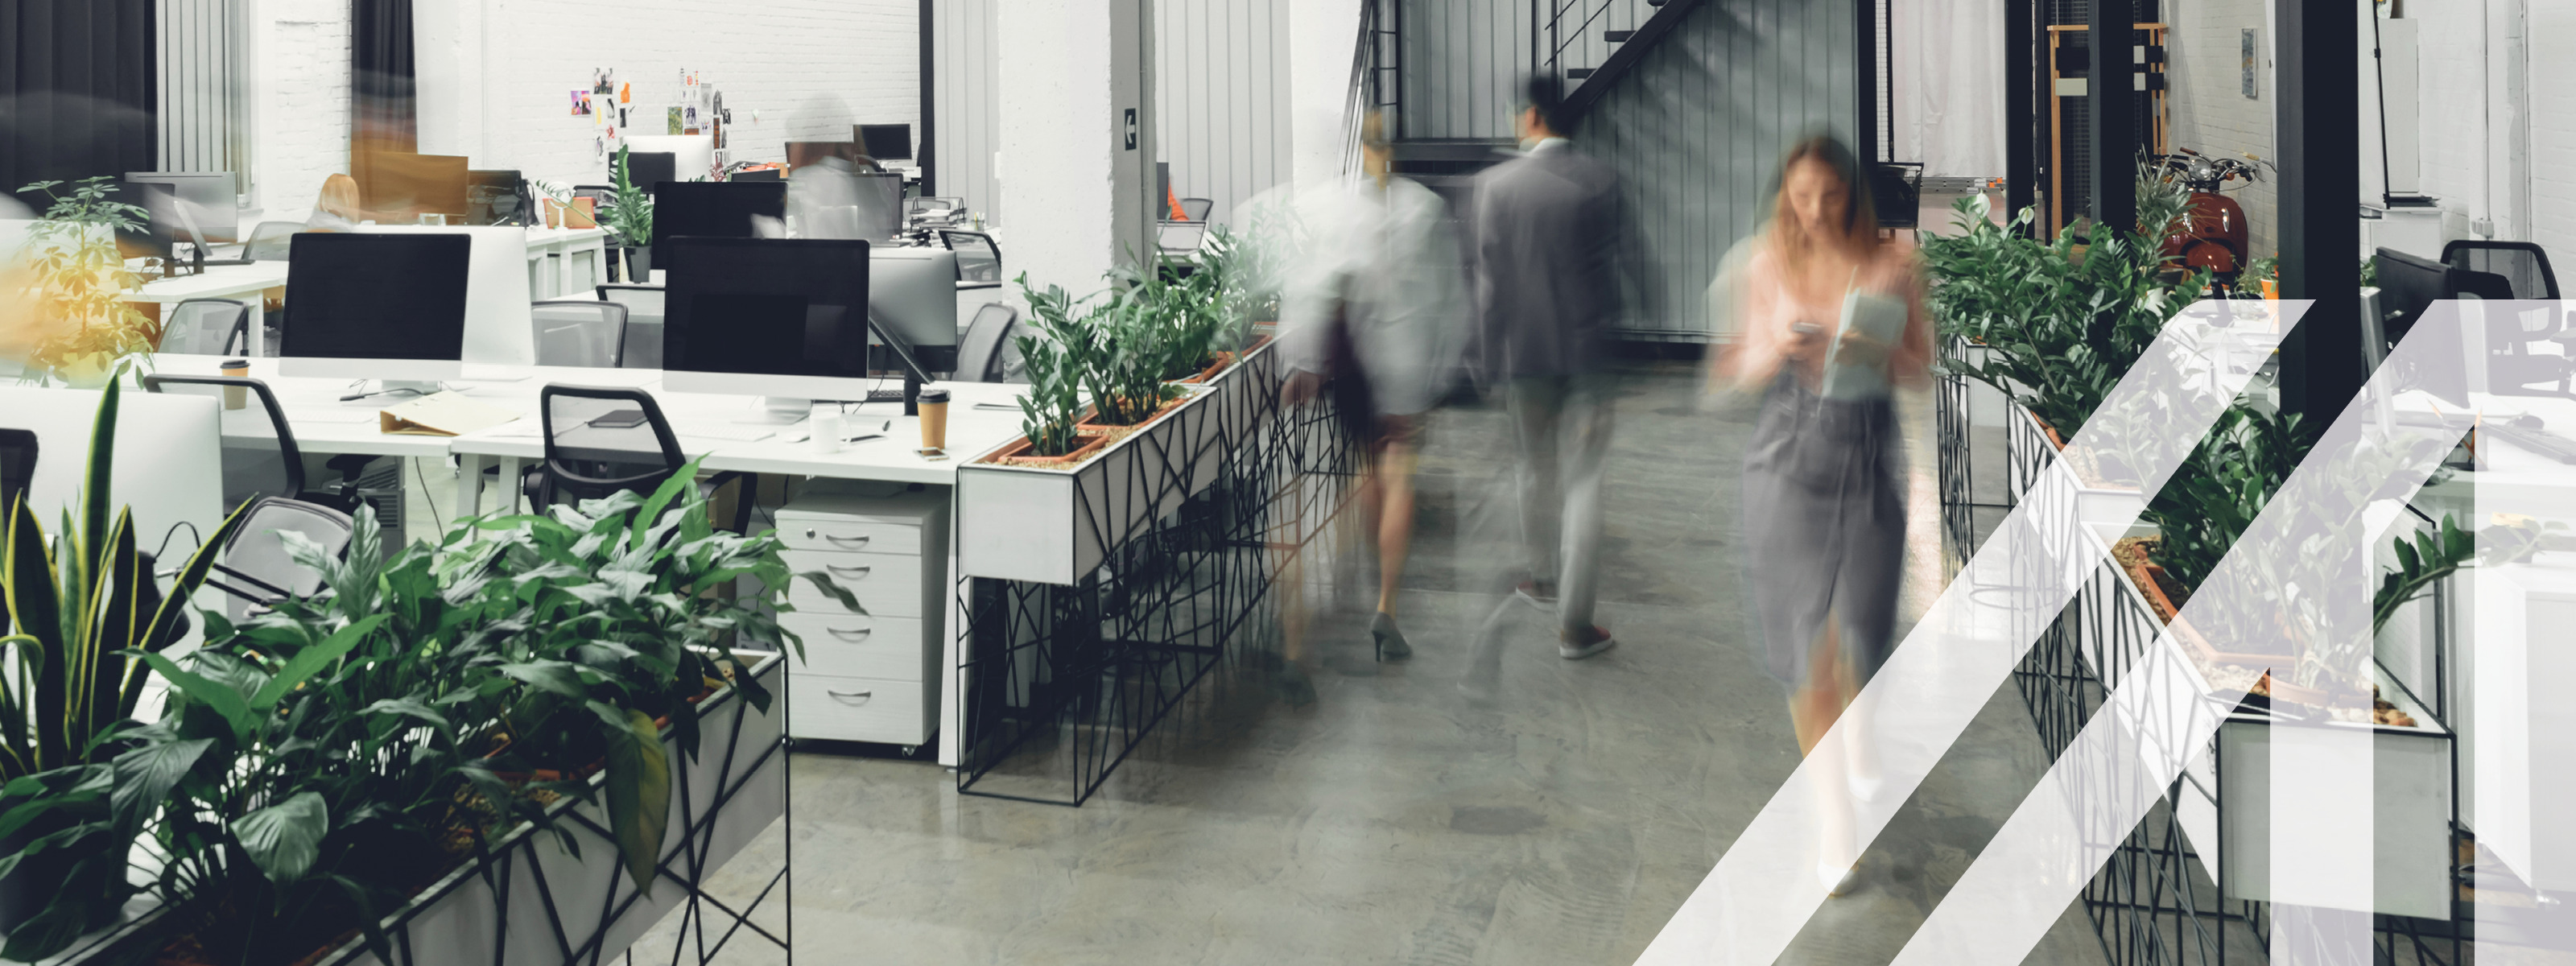 Modernes Großraumbüro mit Pflanzen und Schreibtischen, verschwommene Arbeitskollegen bewegen sich